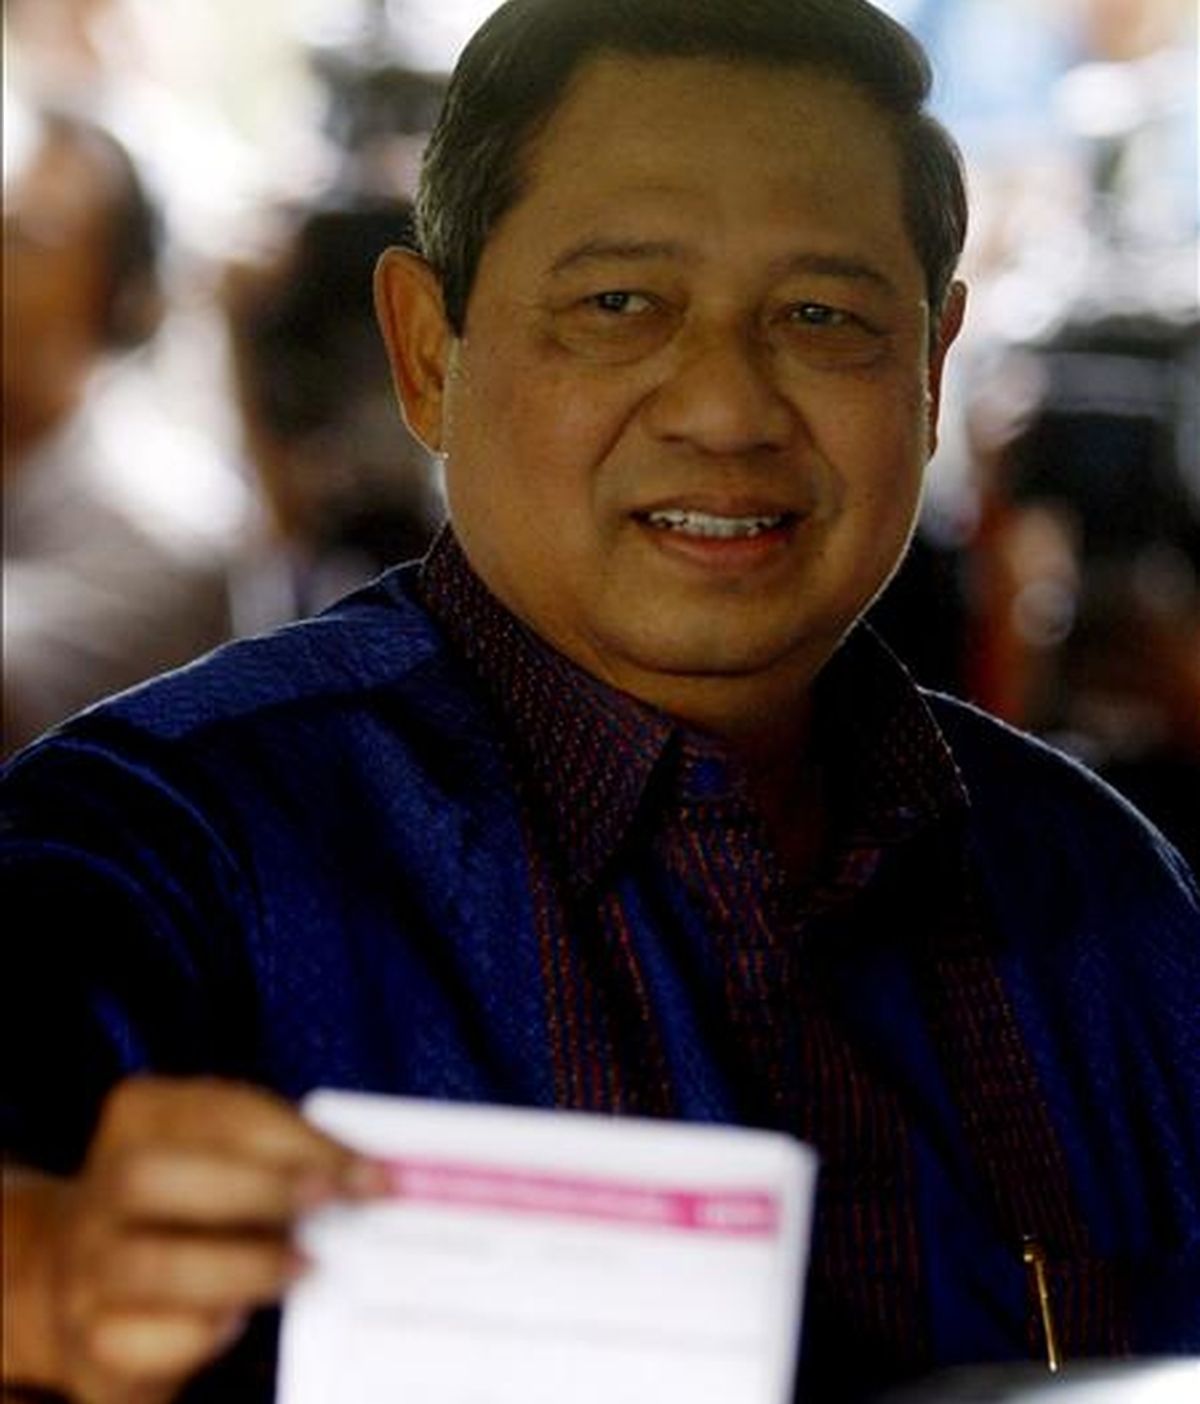 El presidente de Indonesia, Susilo Bambang Yudhoyono, deposita ayer su voto en la urna de un centro electoral en Cikeas, isla de Java, Indonesia. EFE